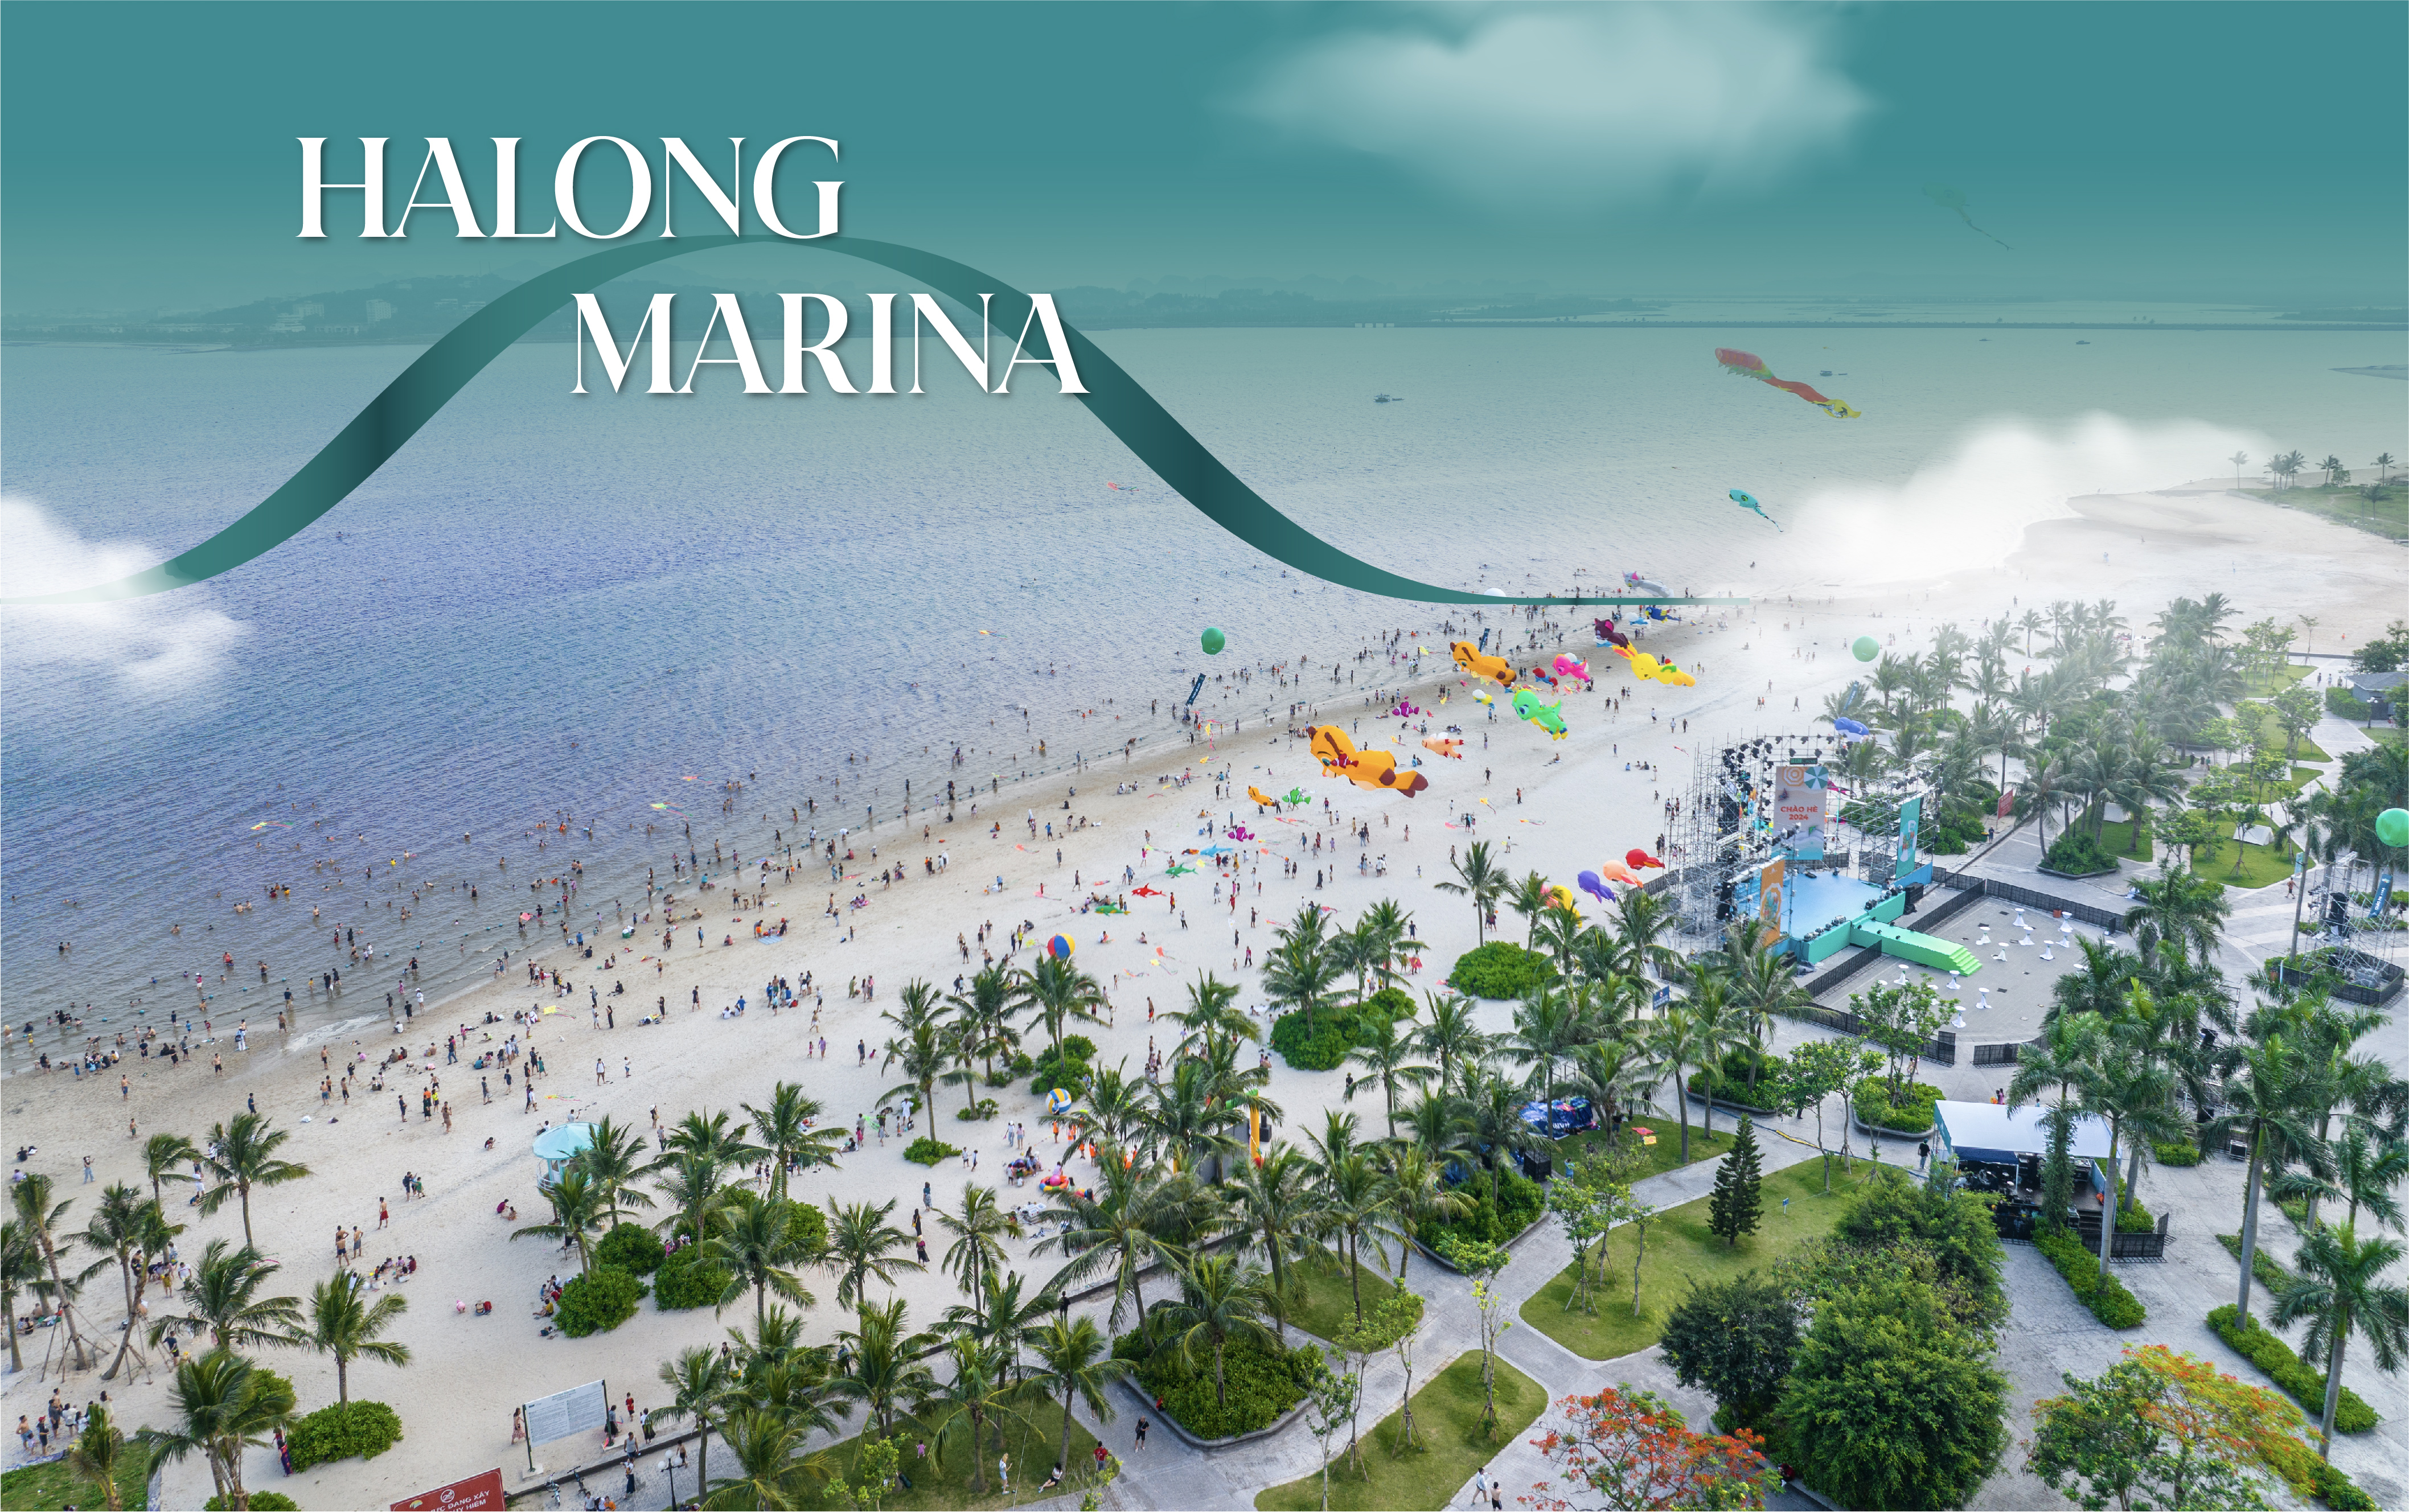 Halong Marina: Hành trình kiến tạo “báu vật” nghỉ dưỡng bên vịnh di sản - Ảnh 9.